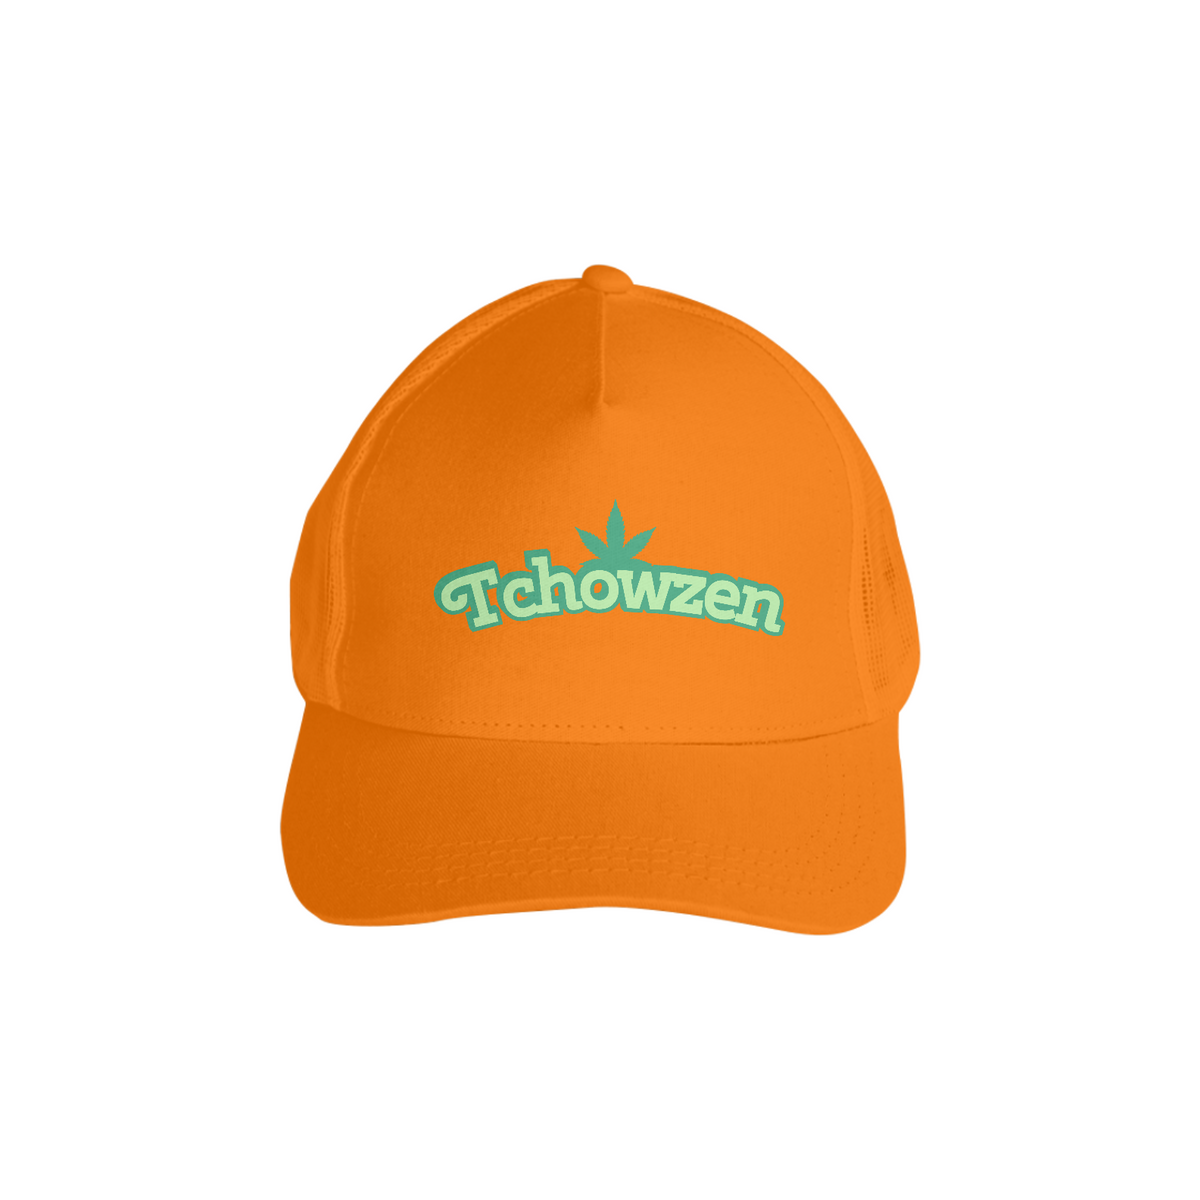 Nome do produto: Tchowzen  com tela